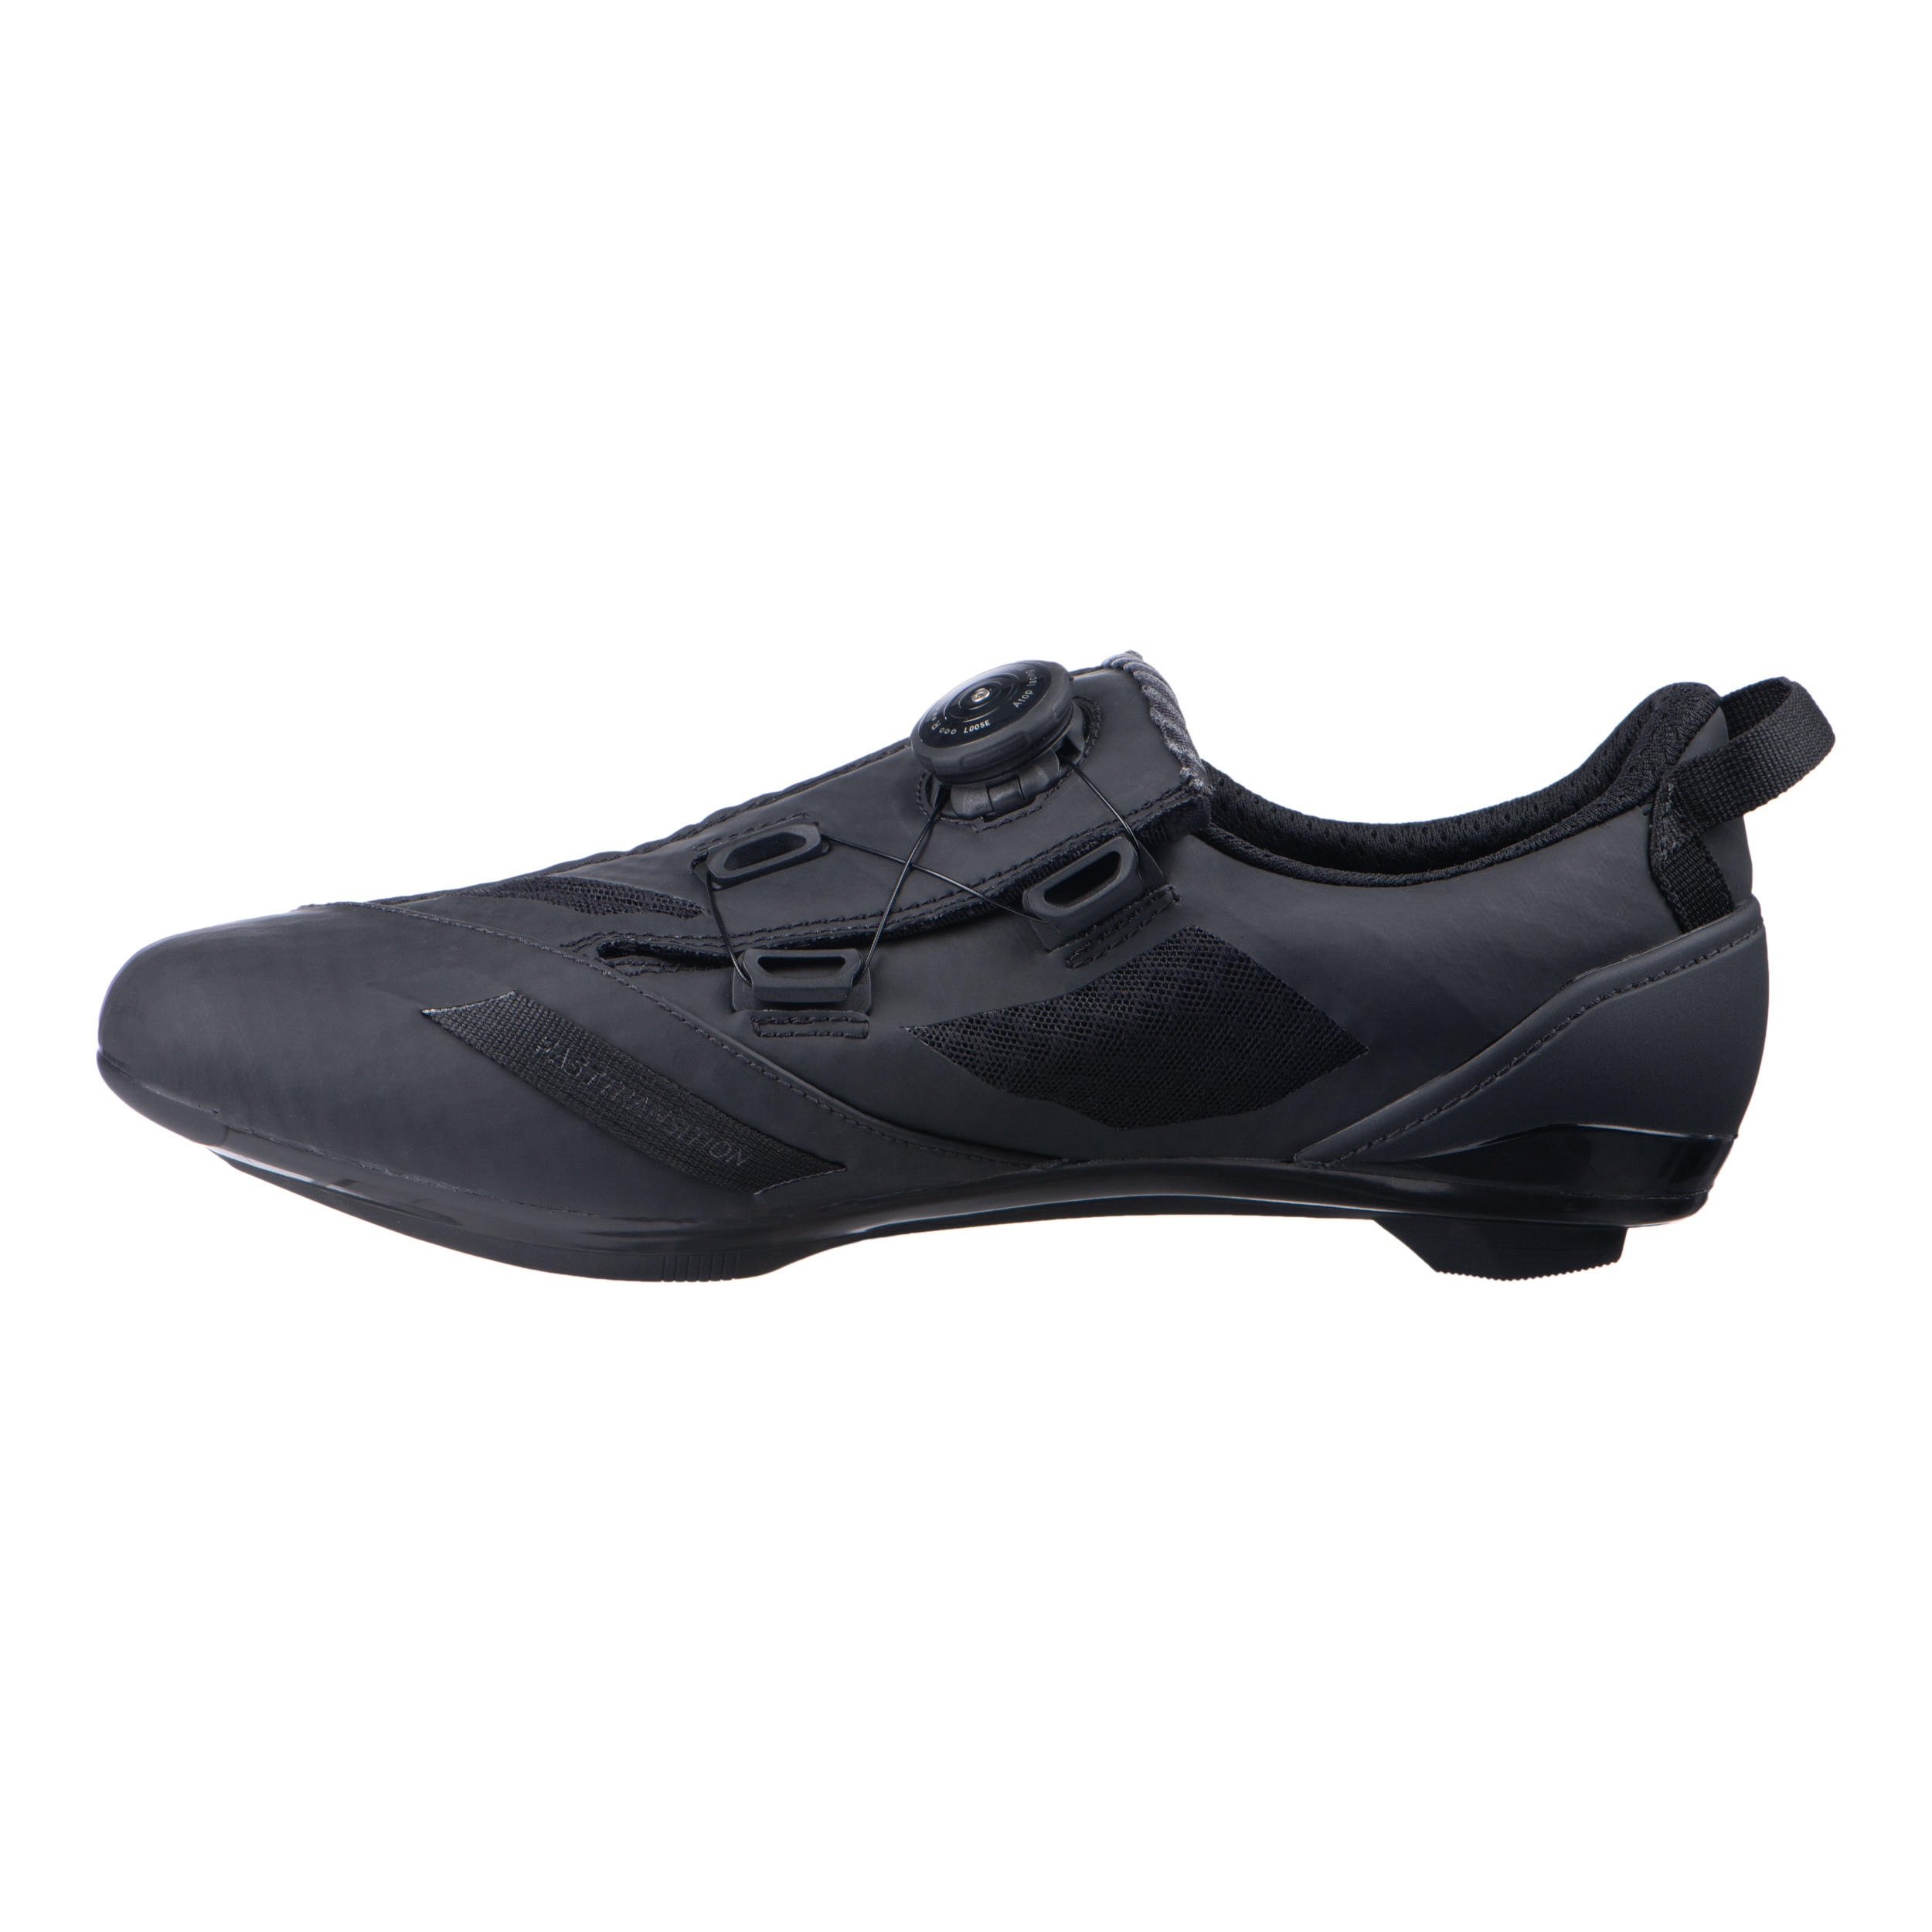 Aptonia Triathlon Cycling Shoes - Black 6/7